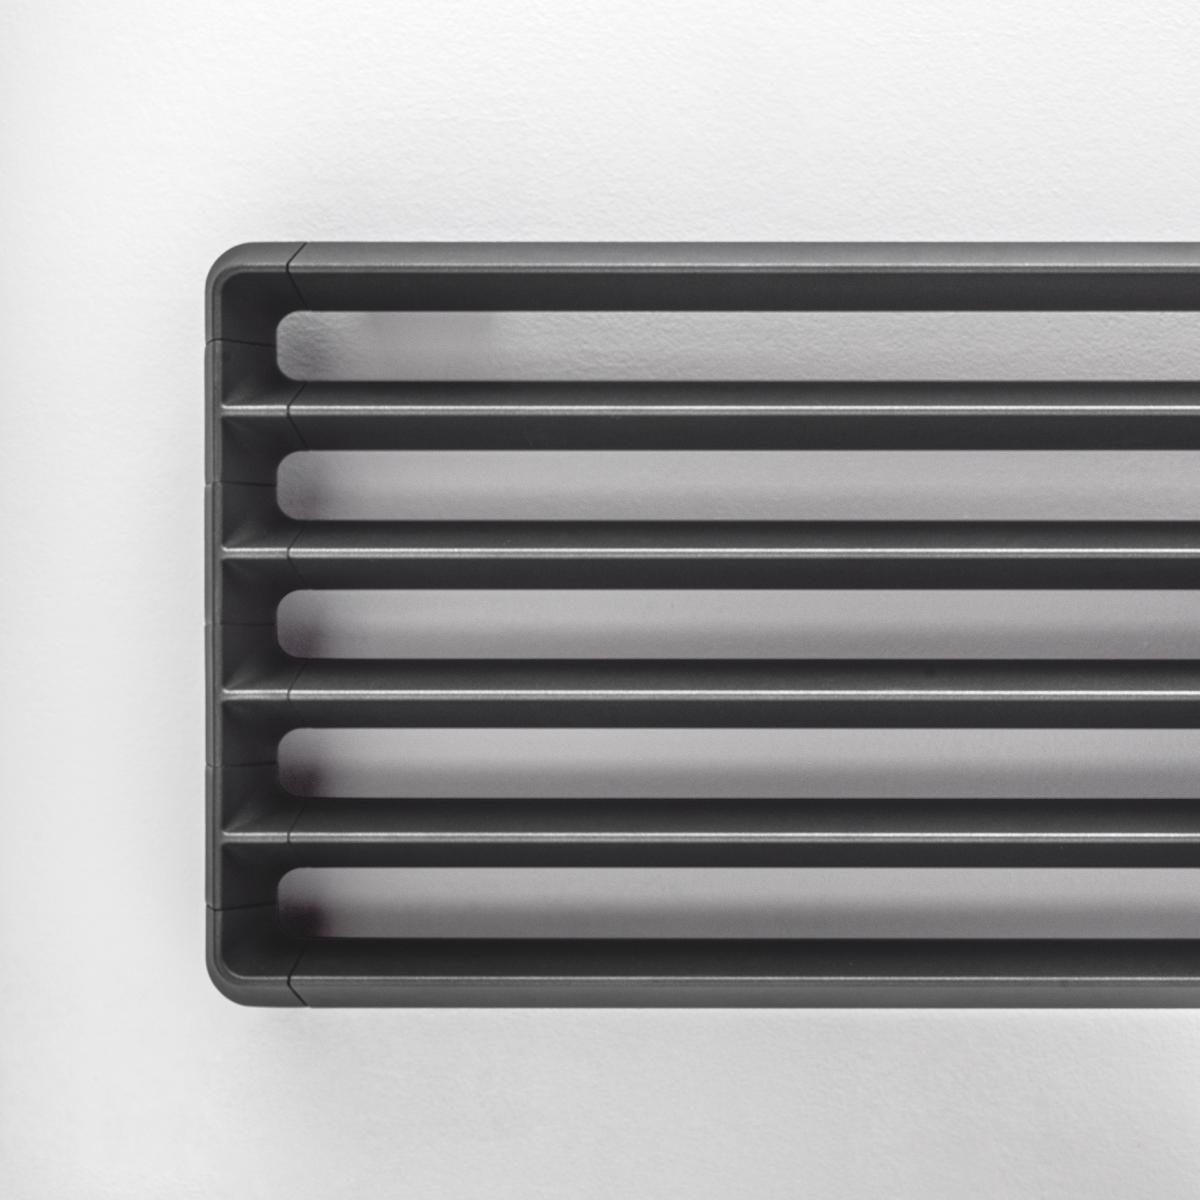 Antrax Design-Heizkrper GHISA horizontal in der Farbe NEOP schwarz, Hhe 44 cm (6 Elemente)